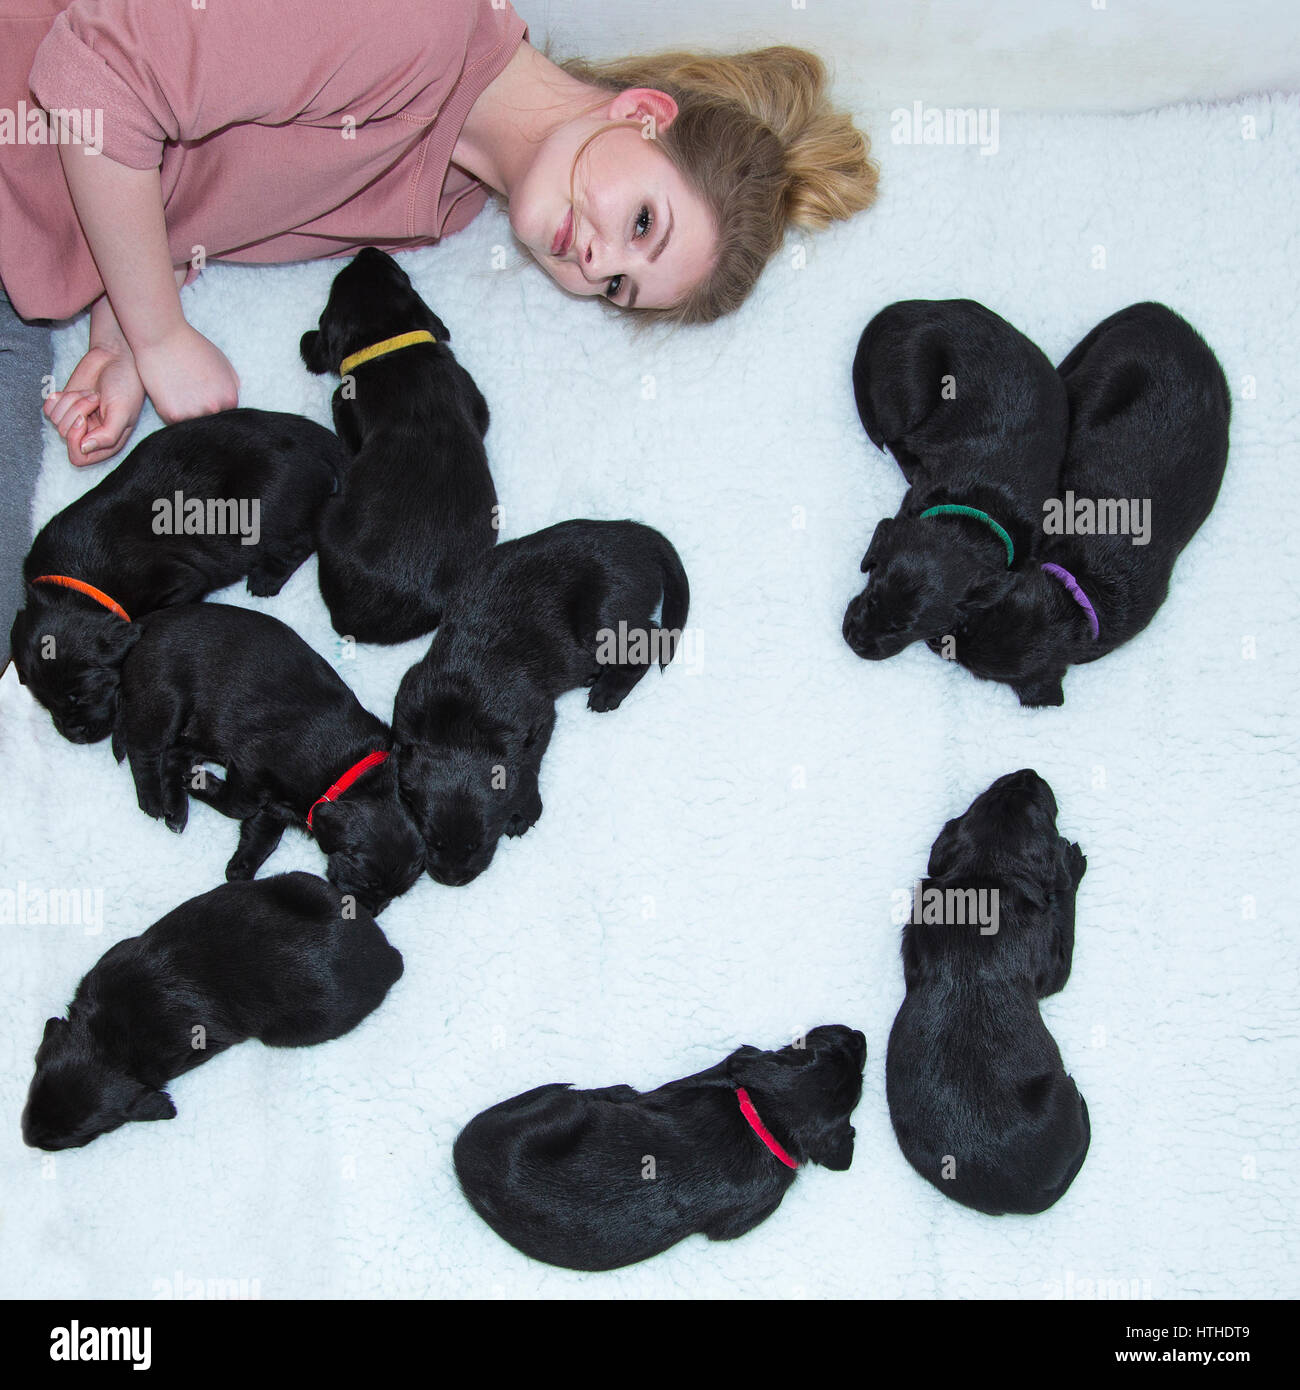 Une jeune fille avec des chiots Labrador noir Banque D'Images